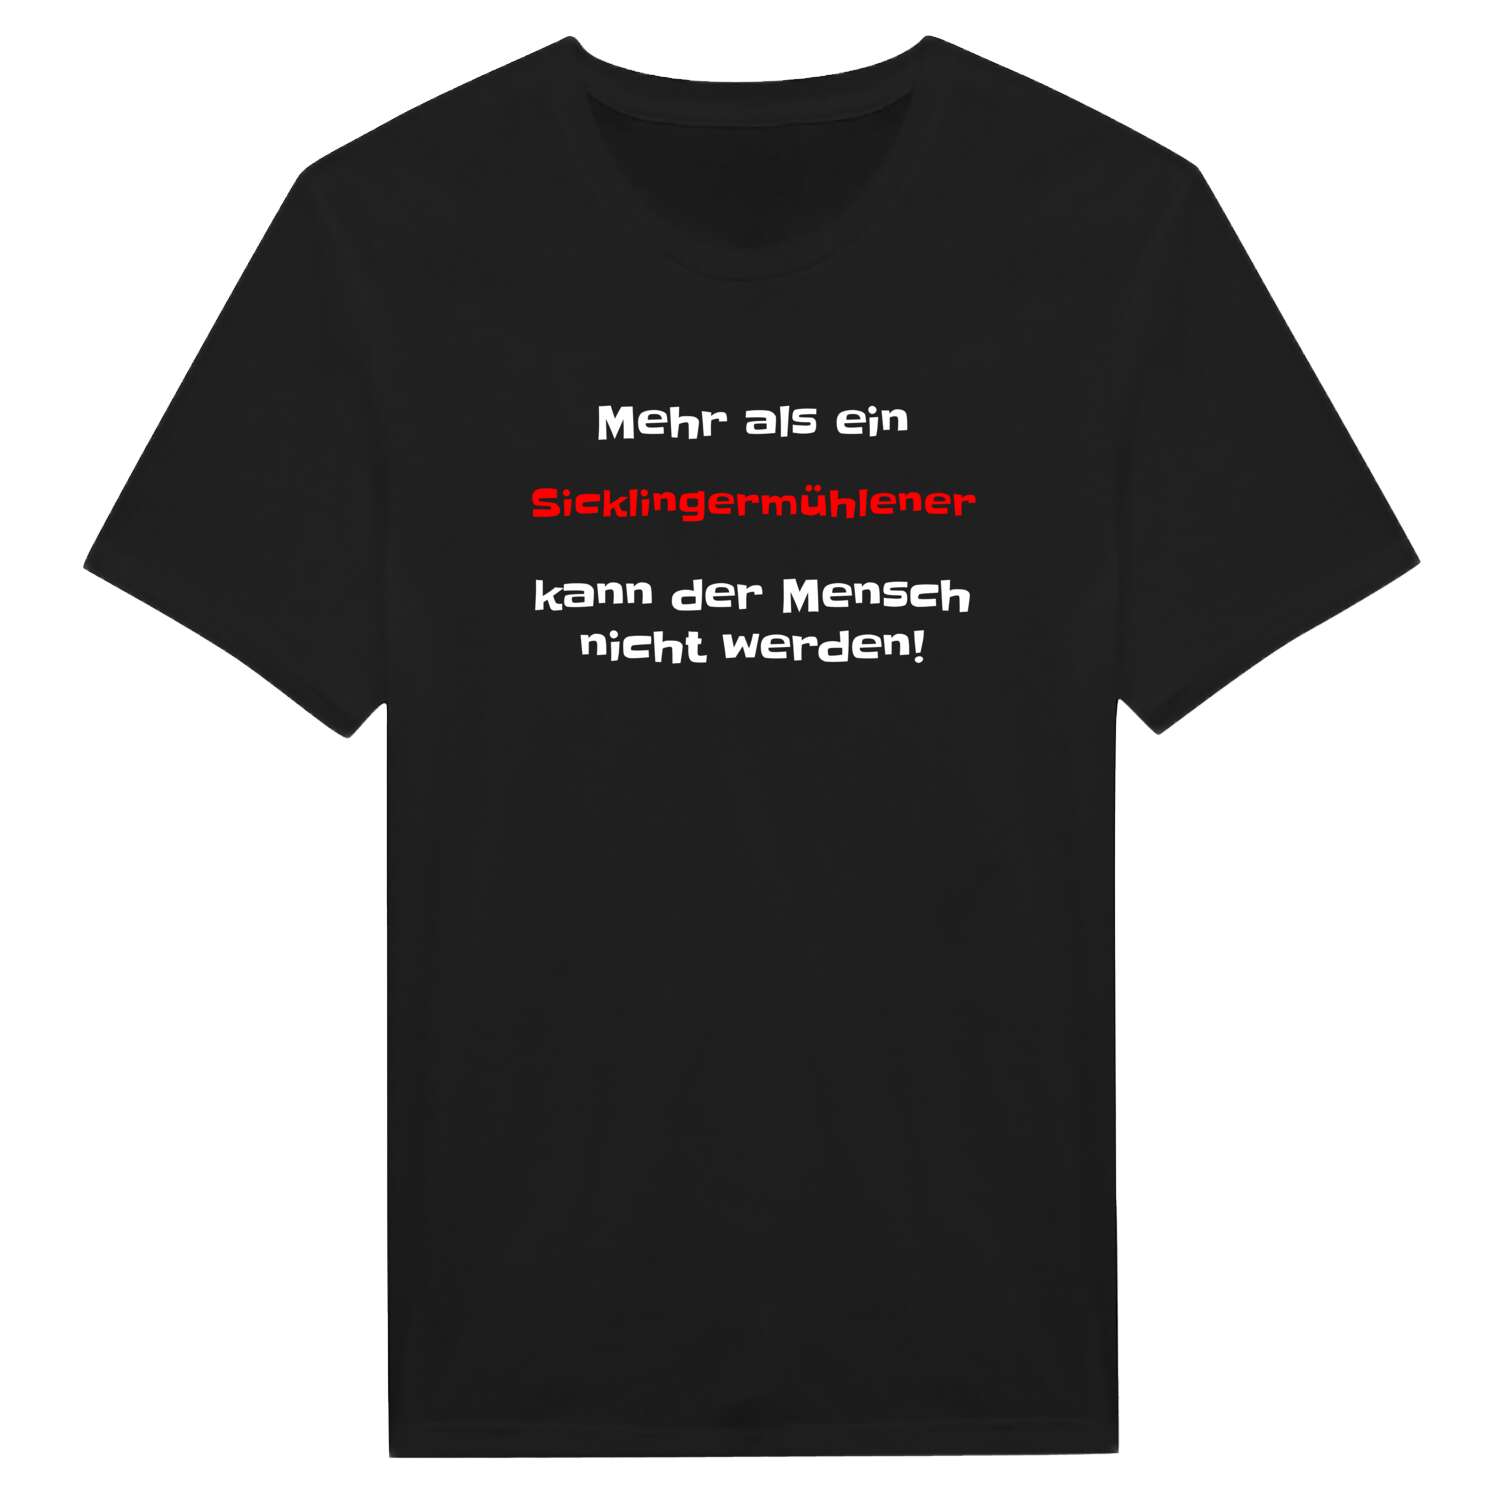 Sicklingermühle T-Shirt »Mehr als ein«